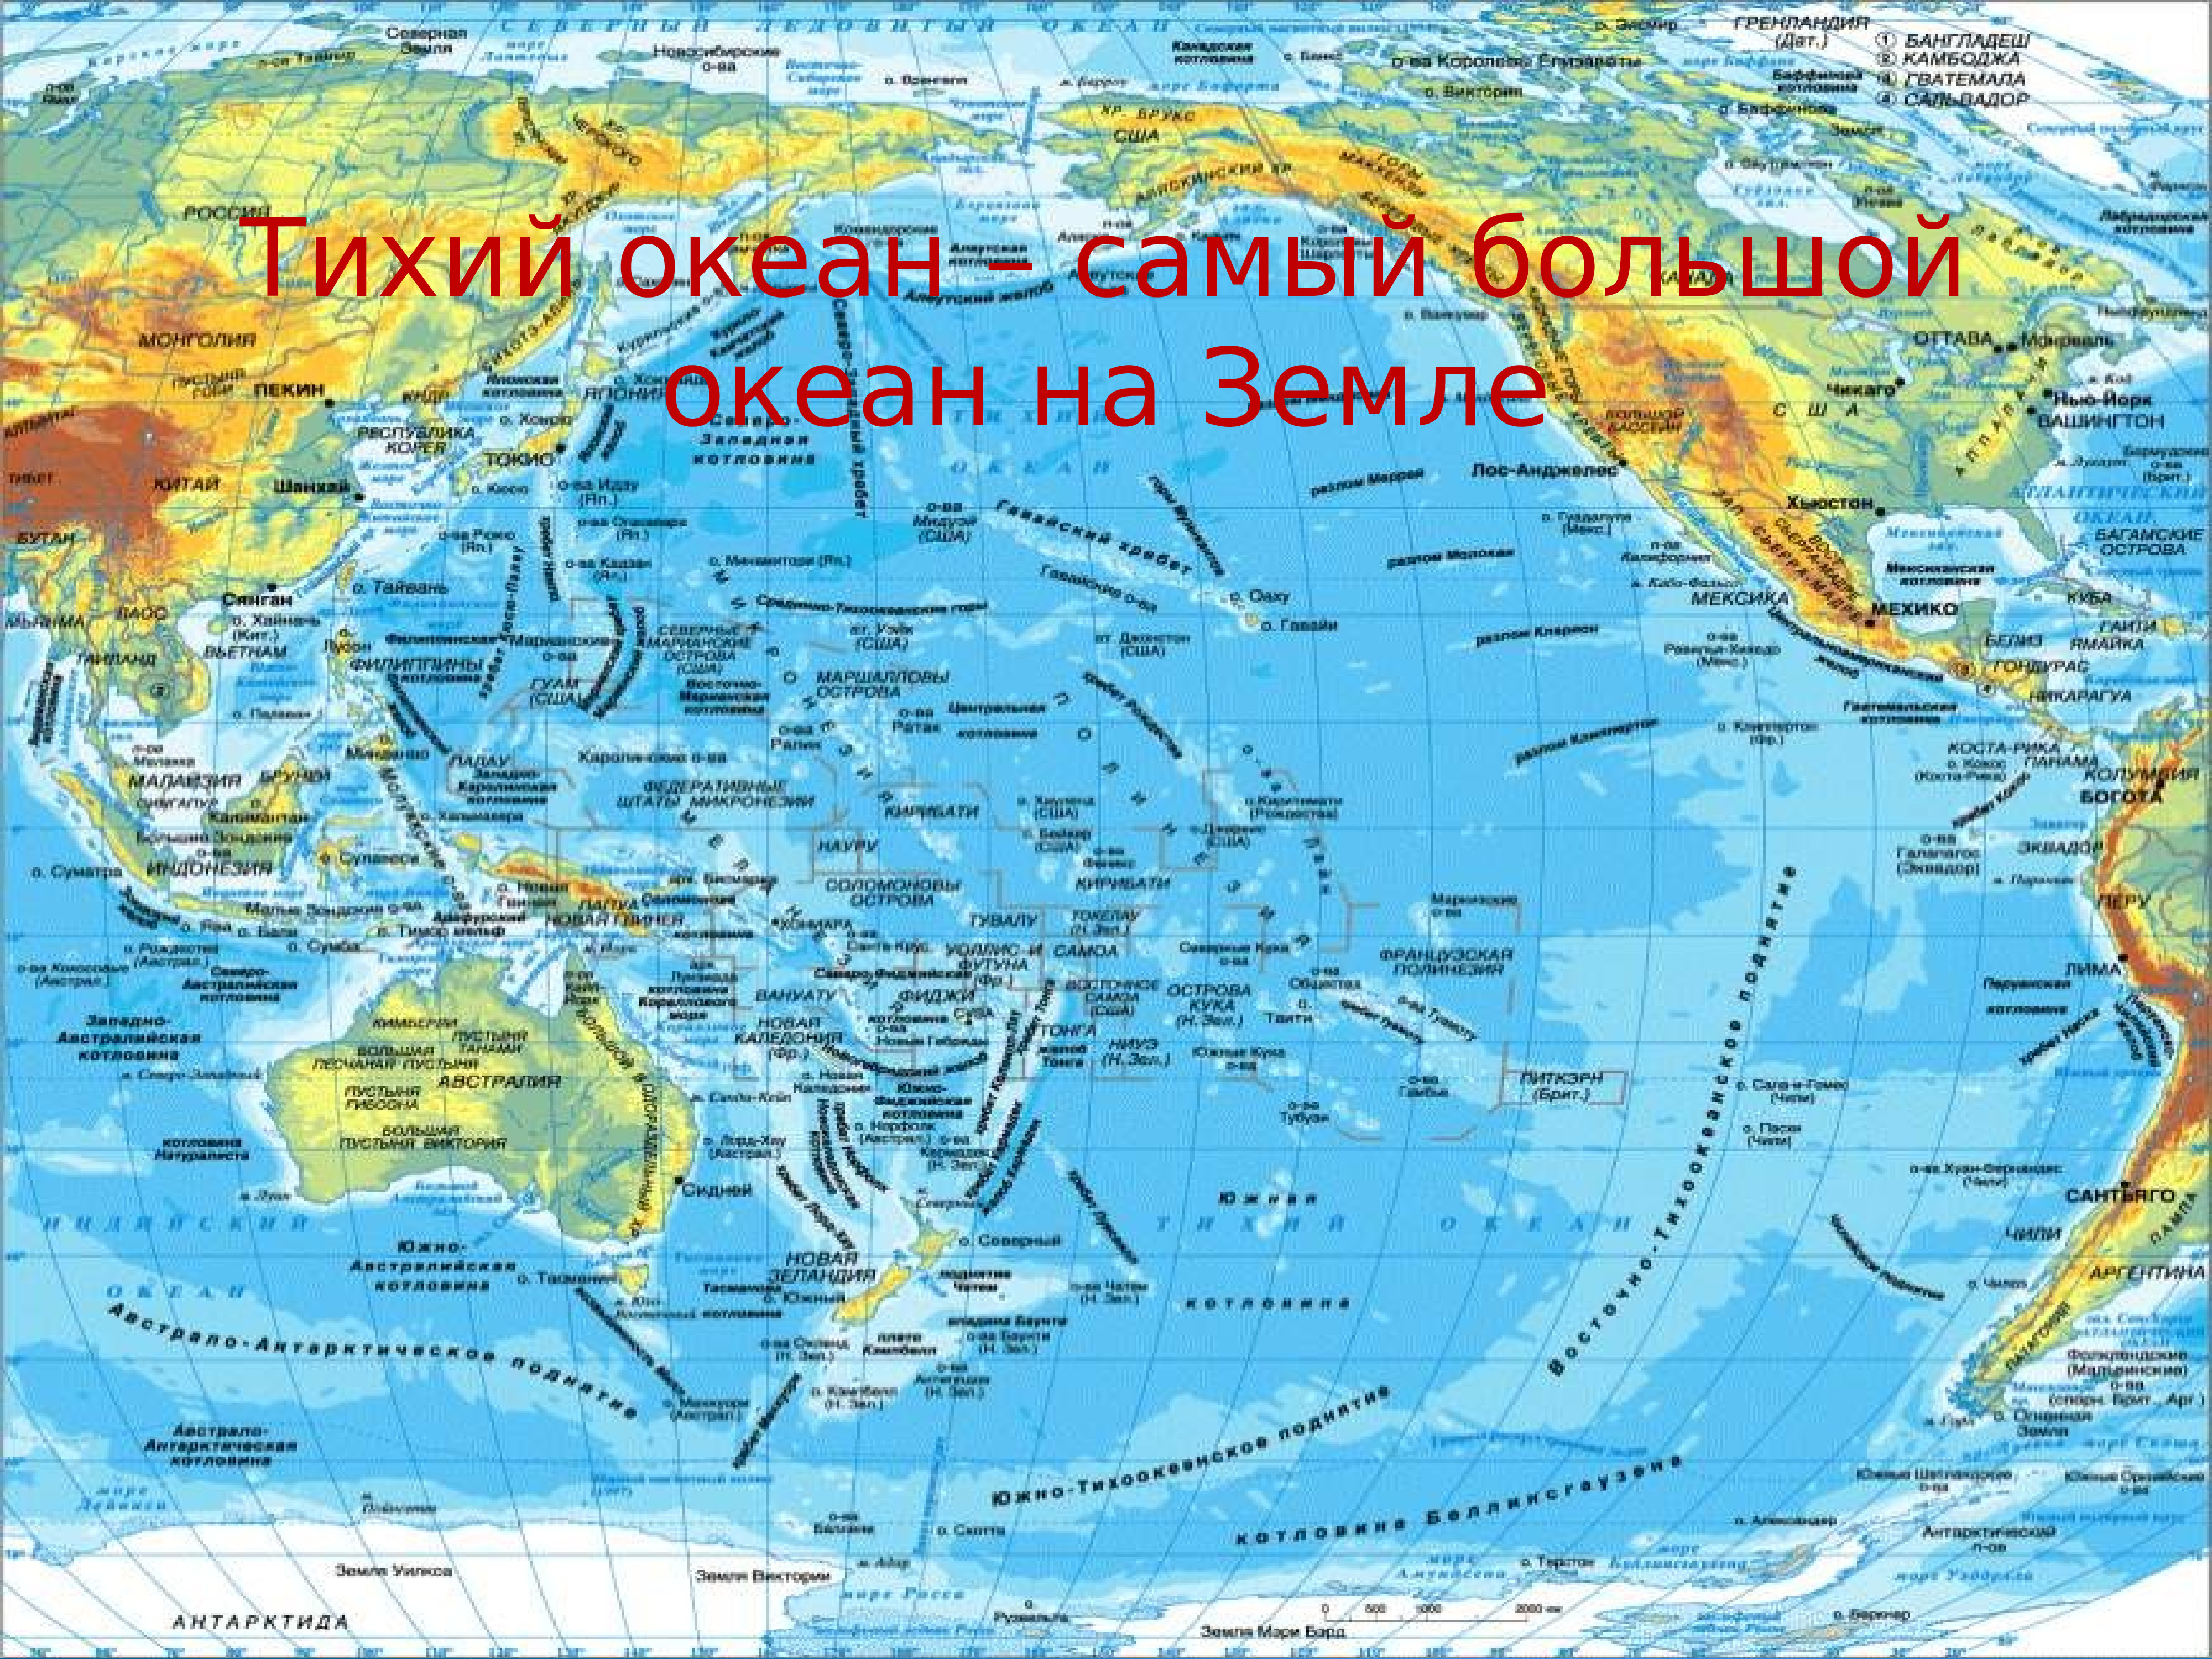 Все моря. Карта Тихого океана с морями заливами и проливами. Физическая карта Тихого океана. Карта Тихого океана географическая. Максимальная глубина Тихого океана на карте.